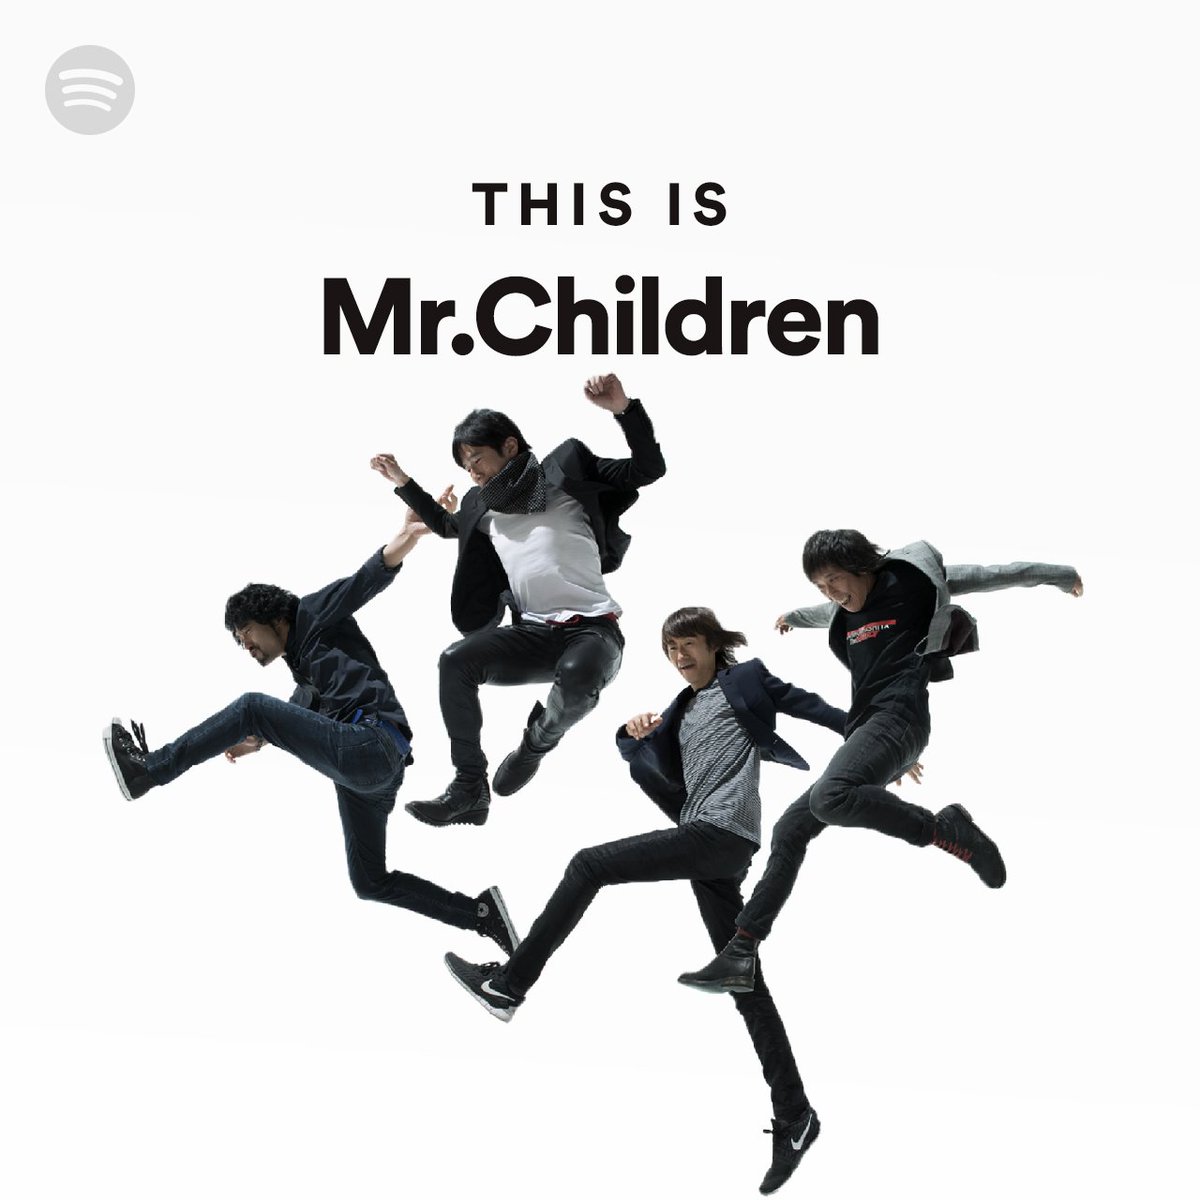 [最新] mr.children ロゴ 画像 250925-Mr.children ロゴ 画像 - jamesthaojp